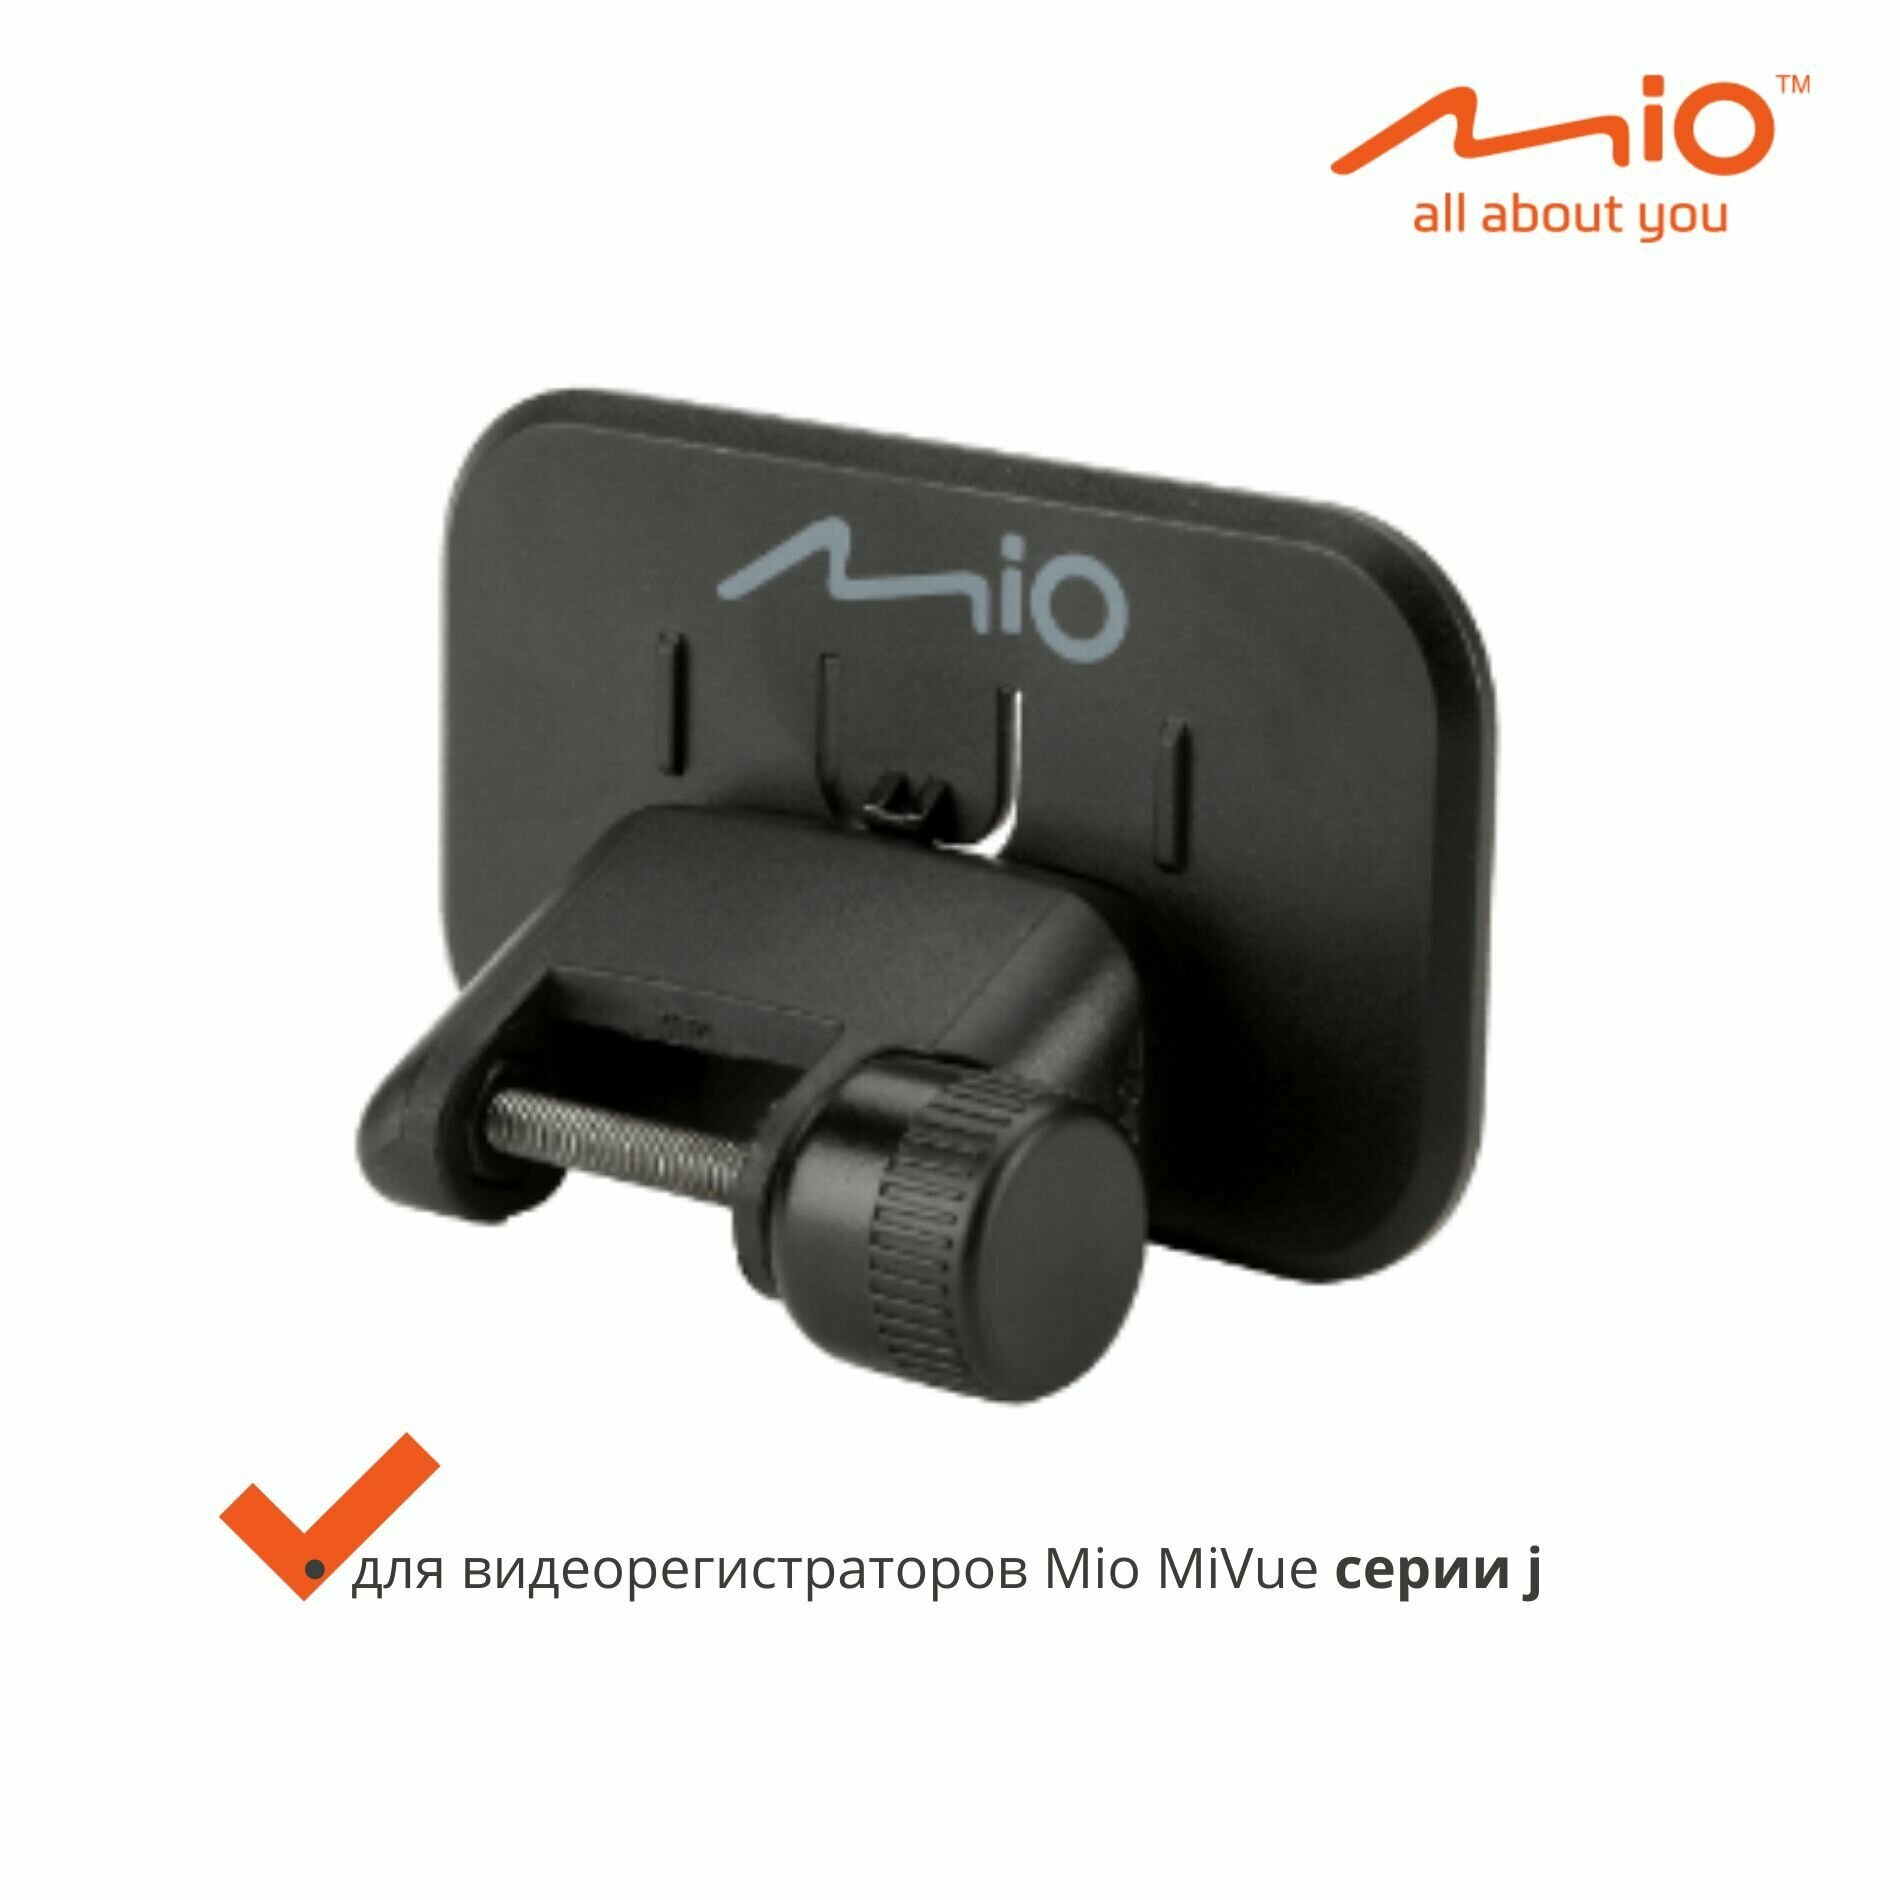 Автомобильное крепление для видеорегистраторов Mio MiVue серии j (без площадки 3М)